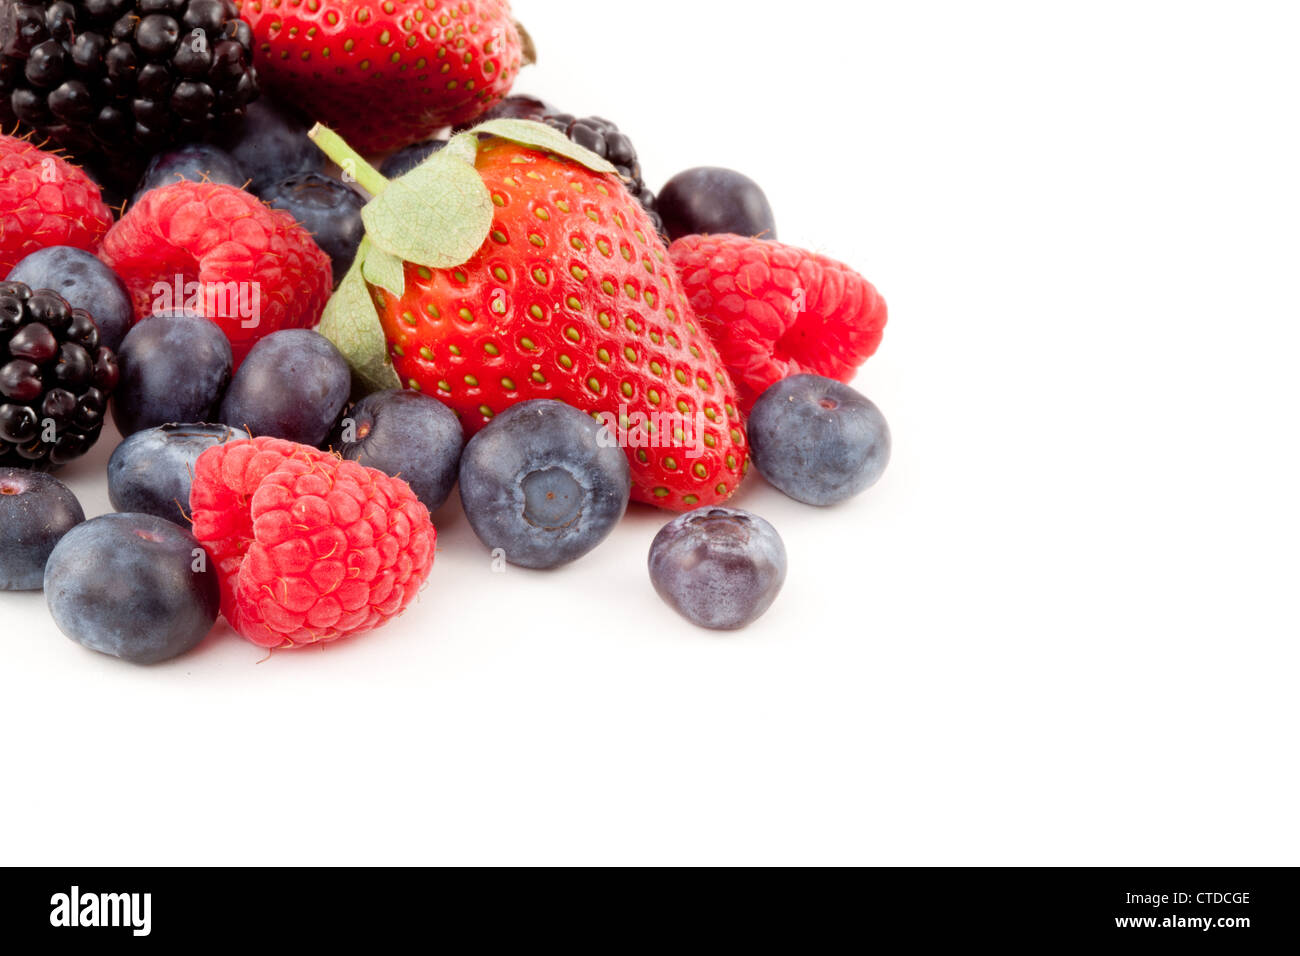 Abundance of berries Stock Photo